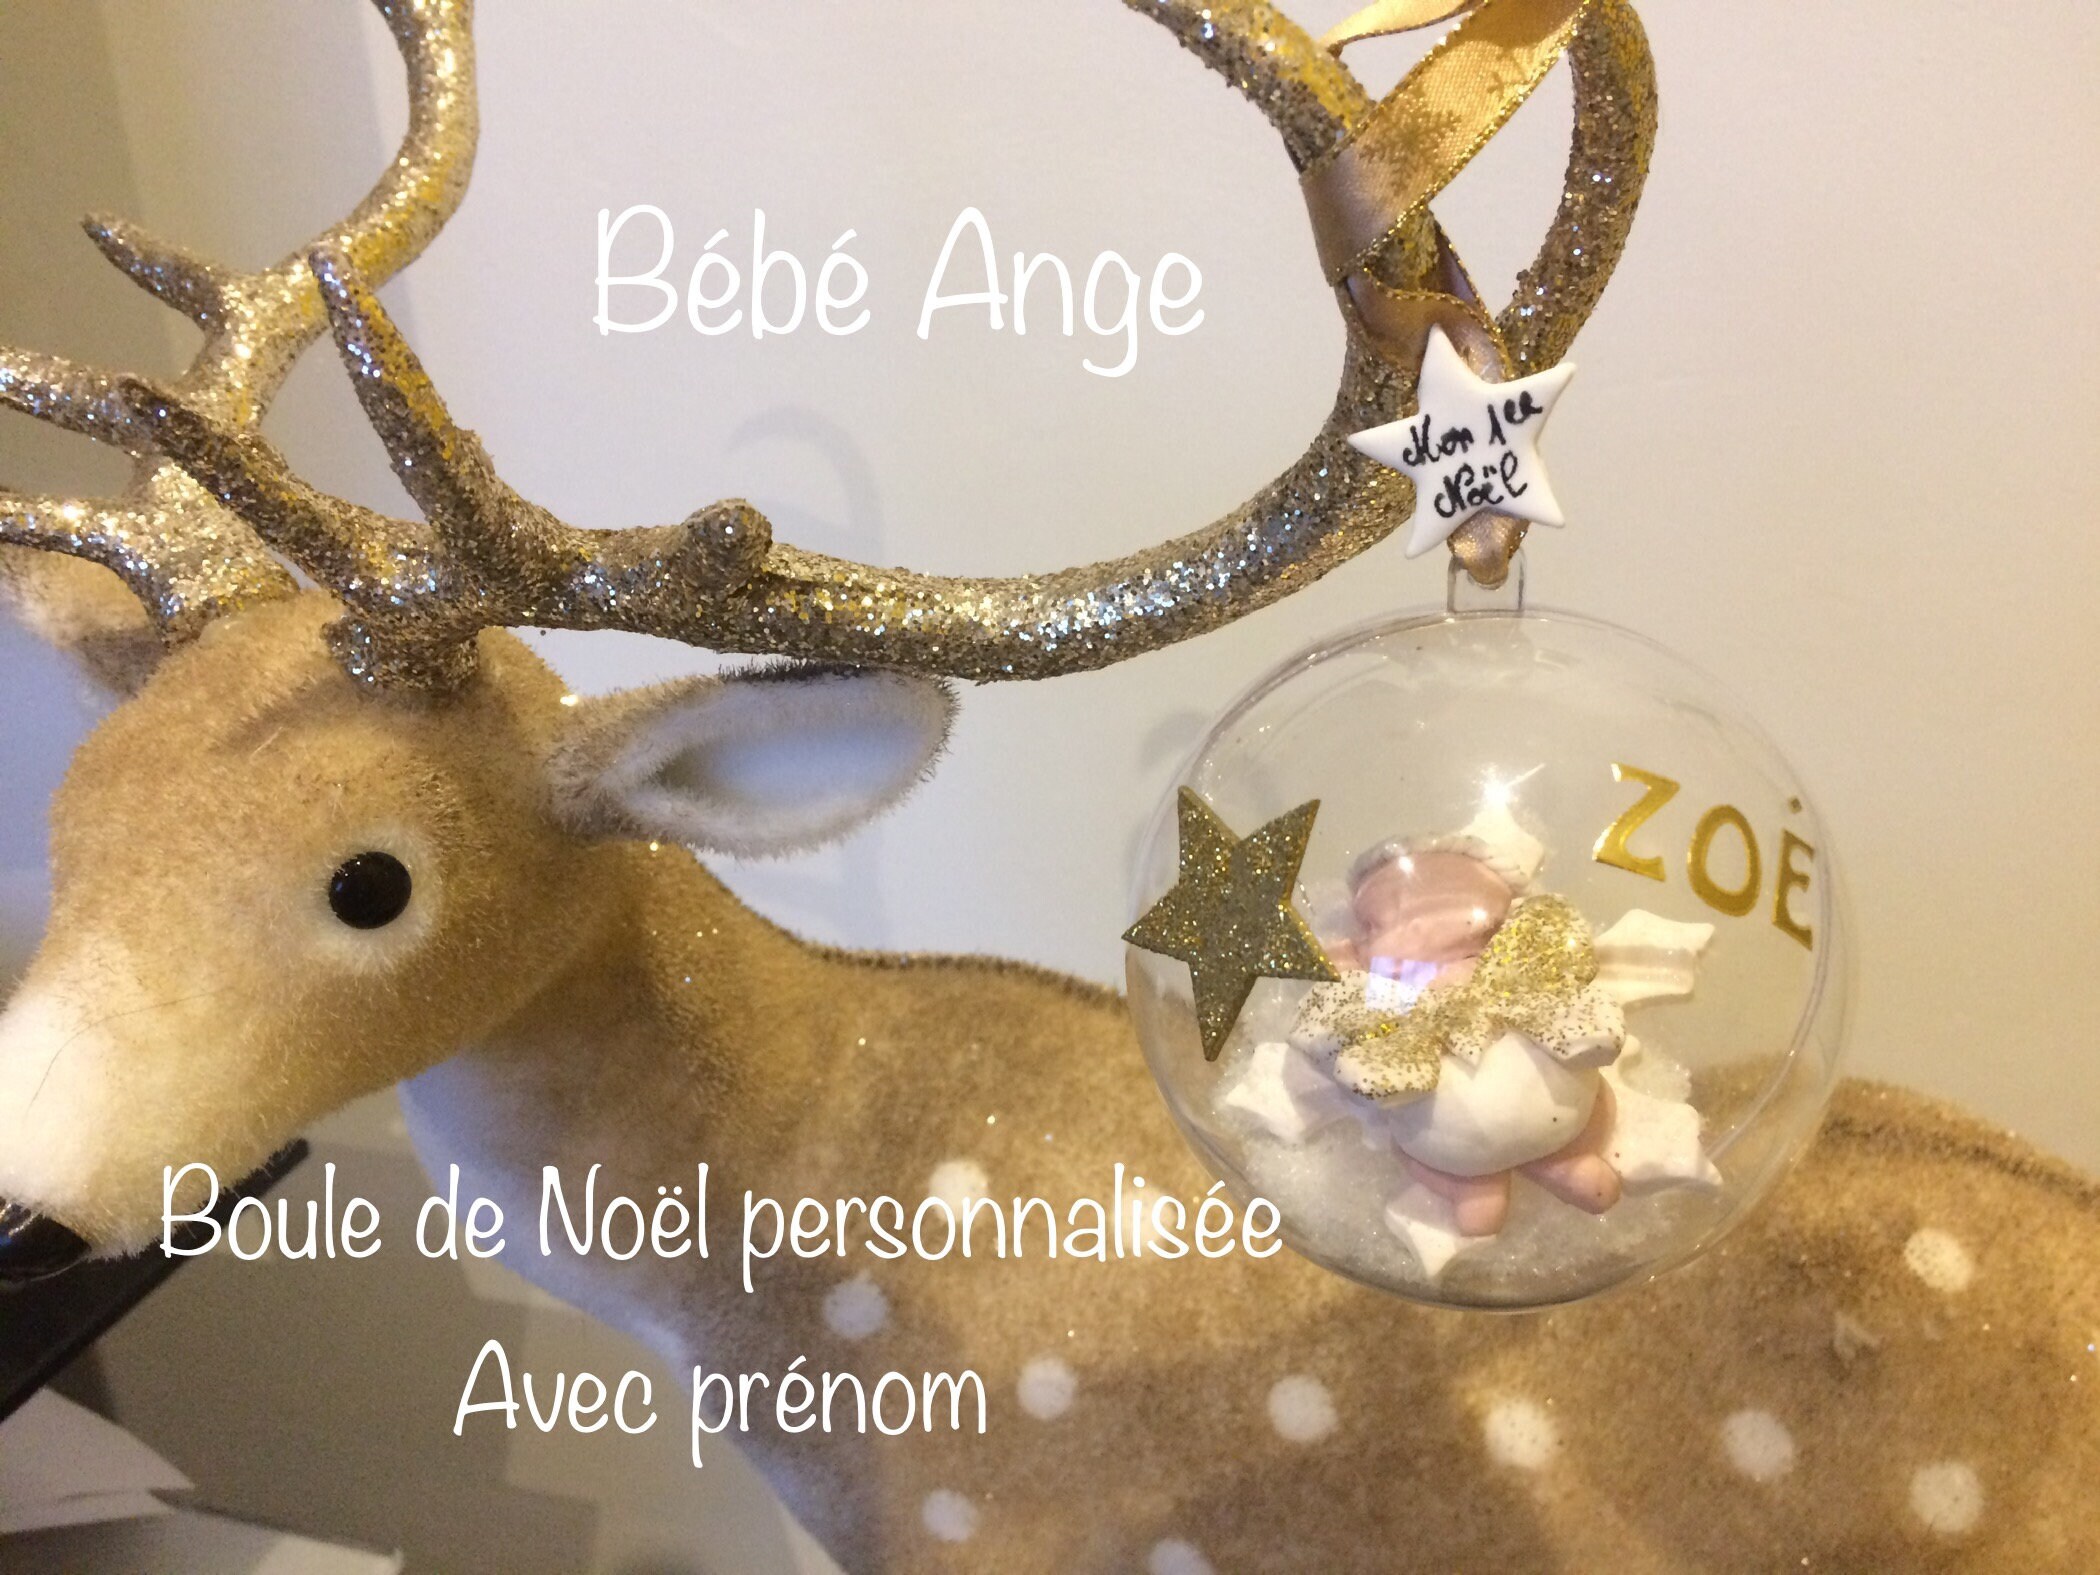 Boule de Noël Personnalisée, Pour Sapin, Noel, Bébé Ange